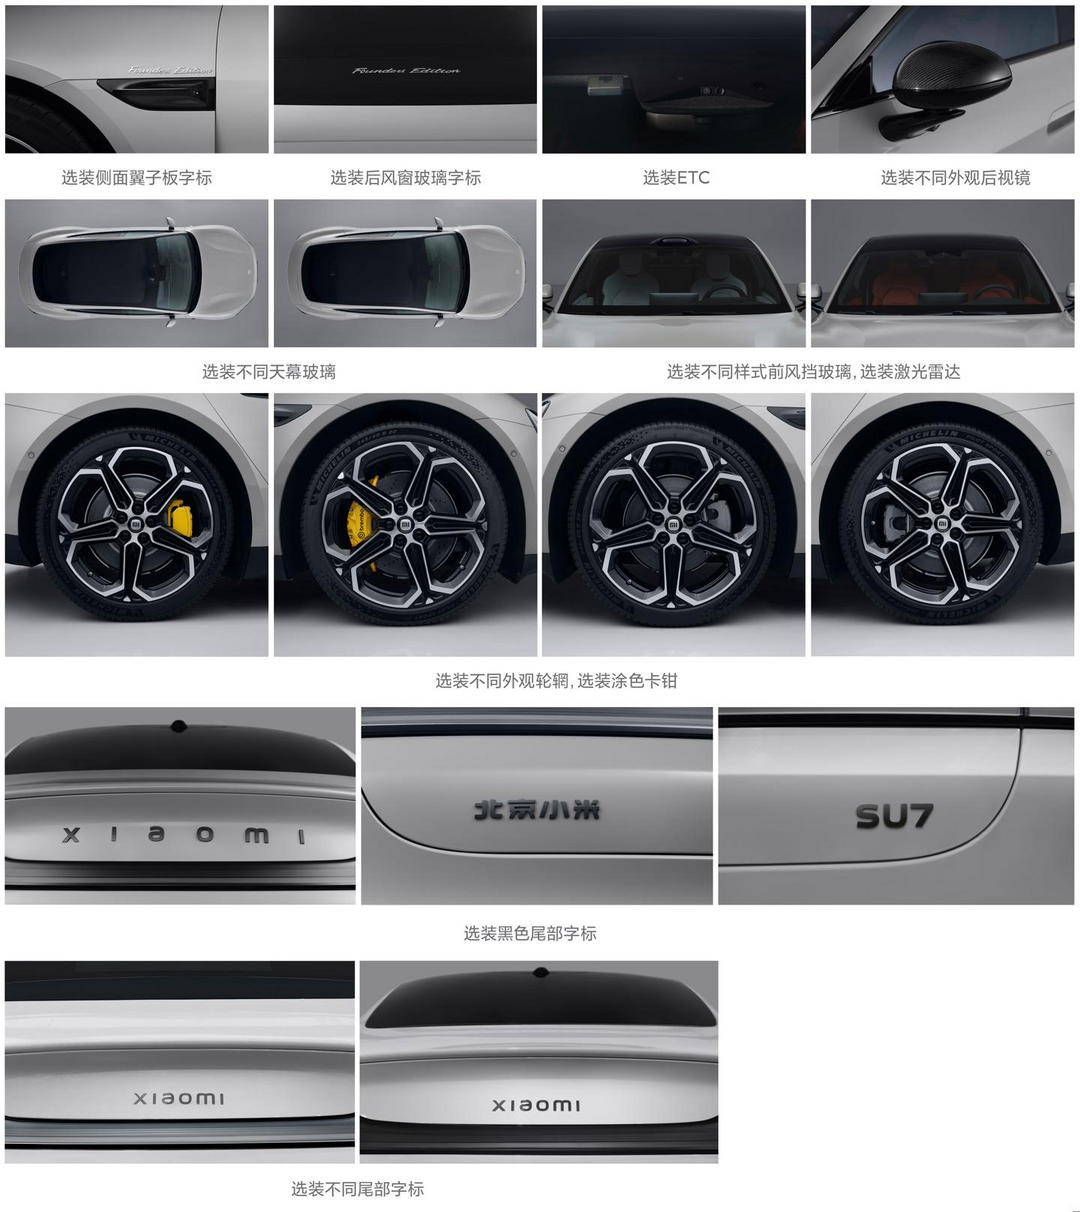 雷军称小米汽车 SU7 尾标字体已修改变小 视觉效果更加协调